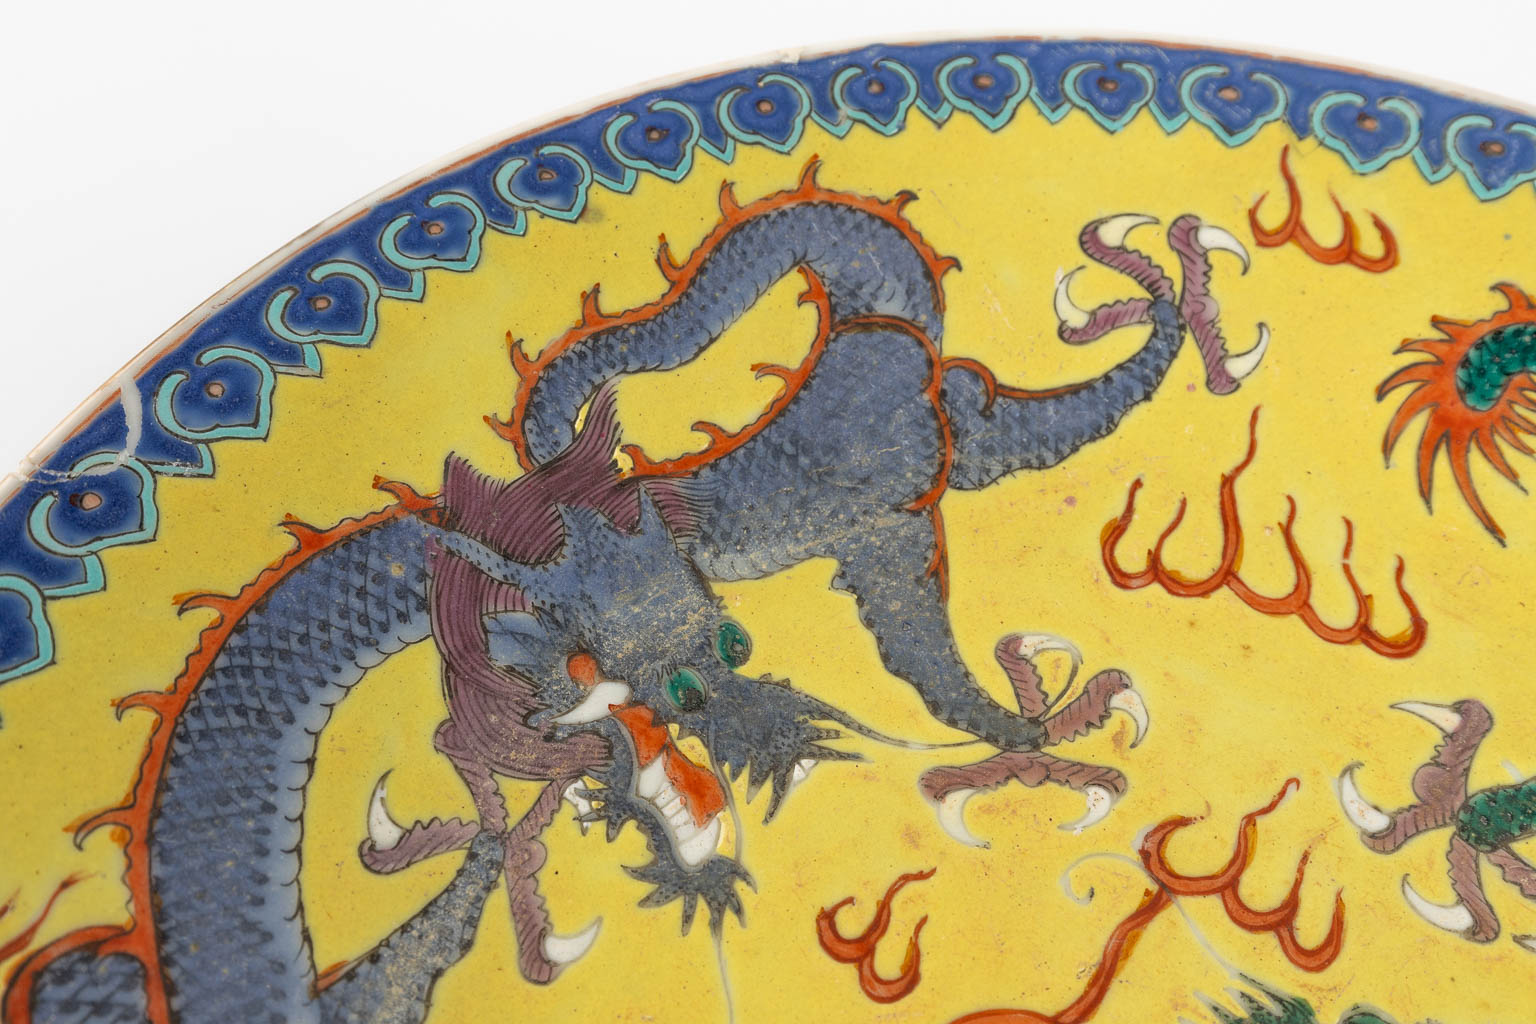 Een Chinees bord met drakendecor, 19de/20ste eeuw. (D:29 cm)